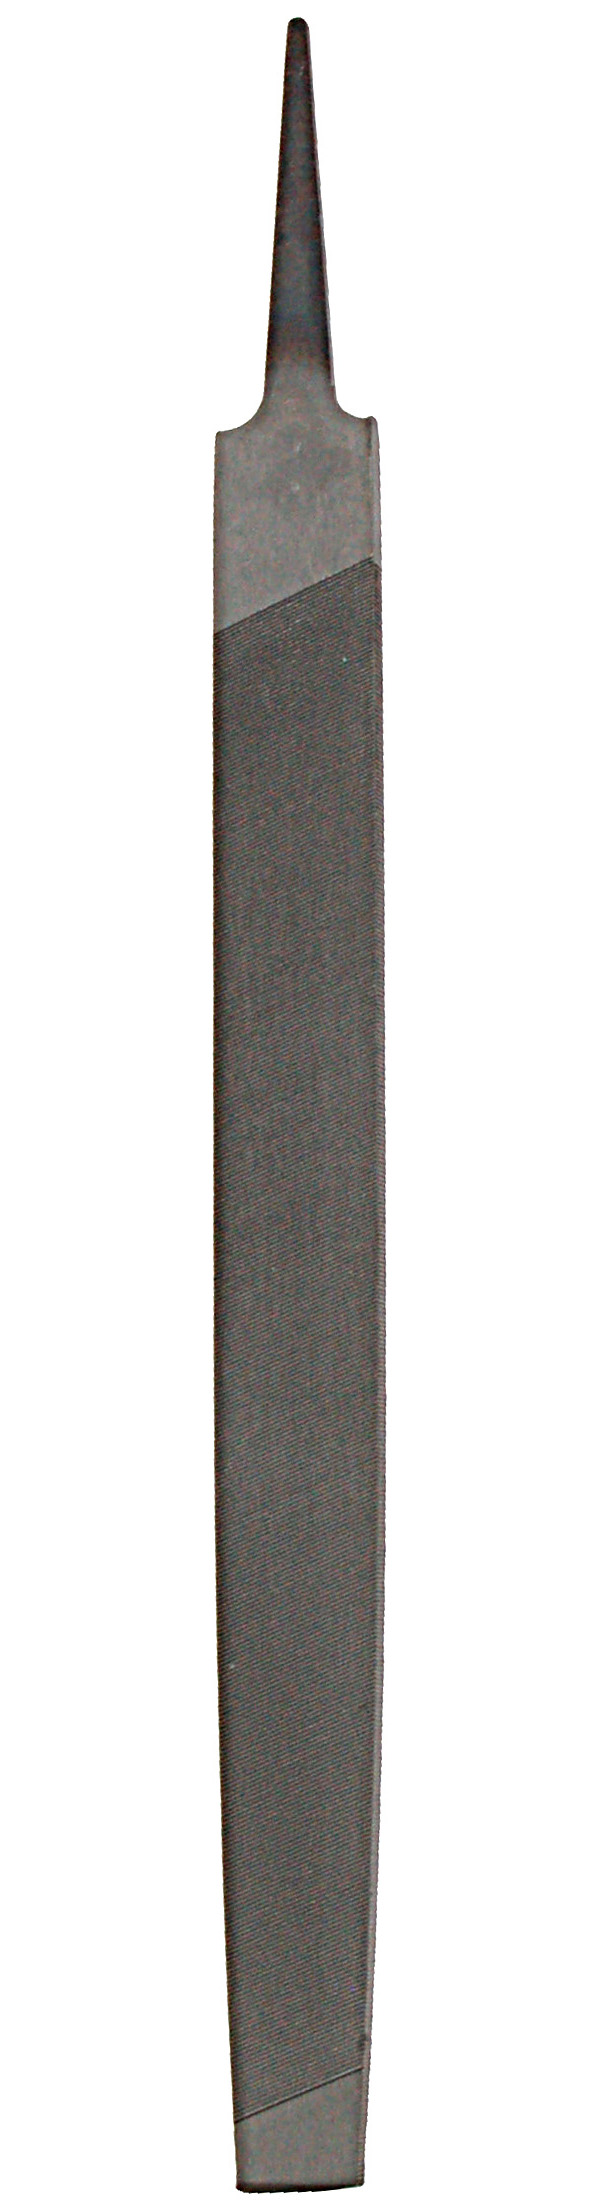 Zenport Sharpening File AGF250 Escofina, Mill Lima Bastarda, 10-pulgadas (250 mm), para afilar cuchillos y tijeras de podar